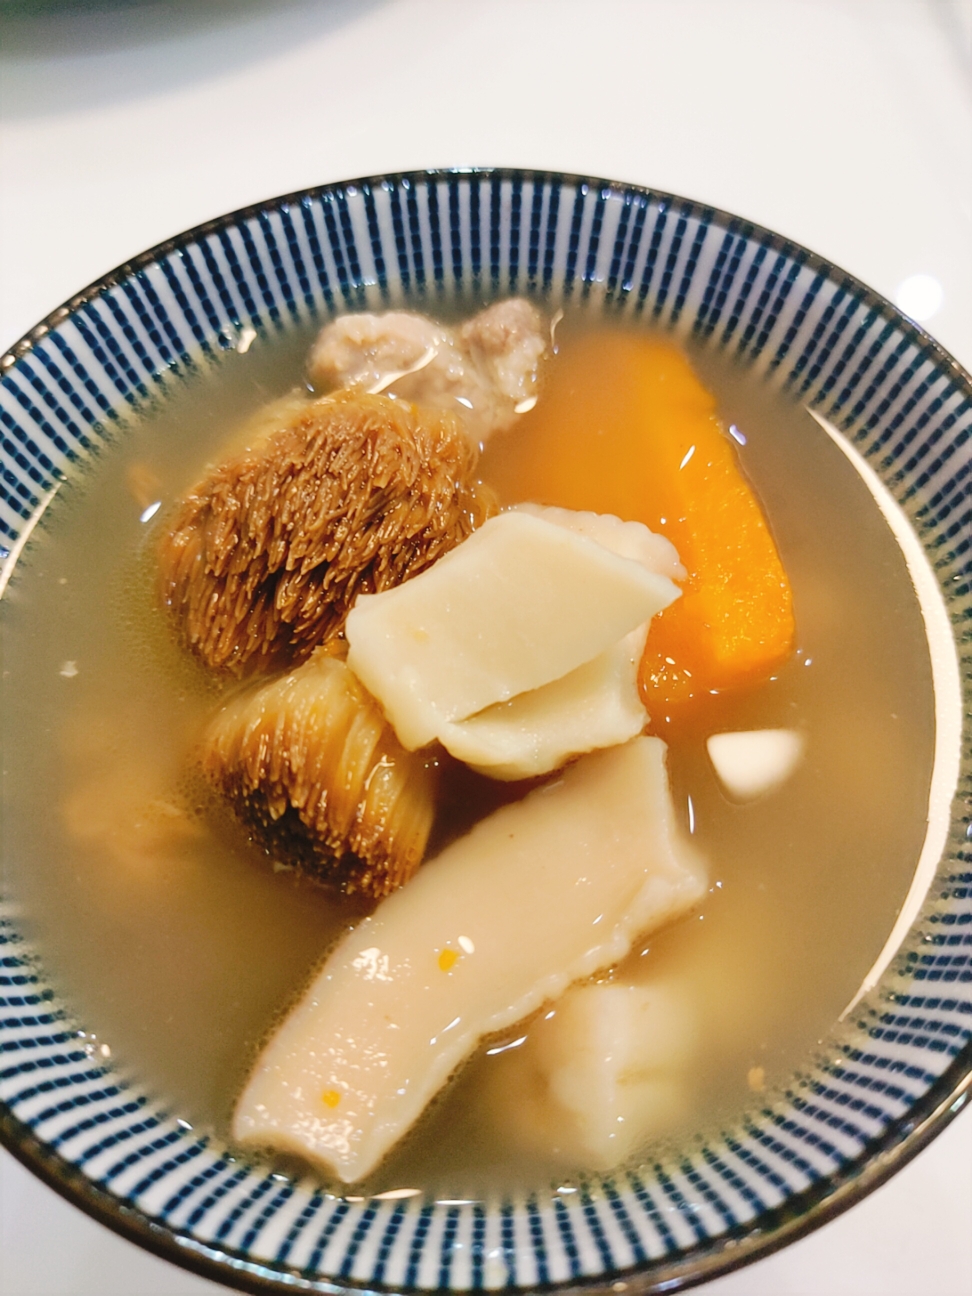 响螺片猴头菇养胃汤的做法步骤图 海汁味干货 下厨房